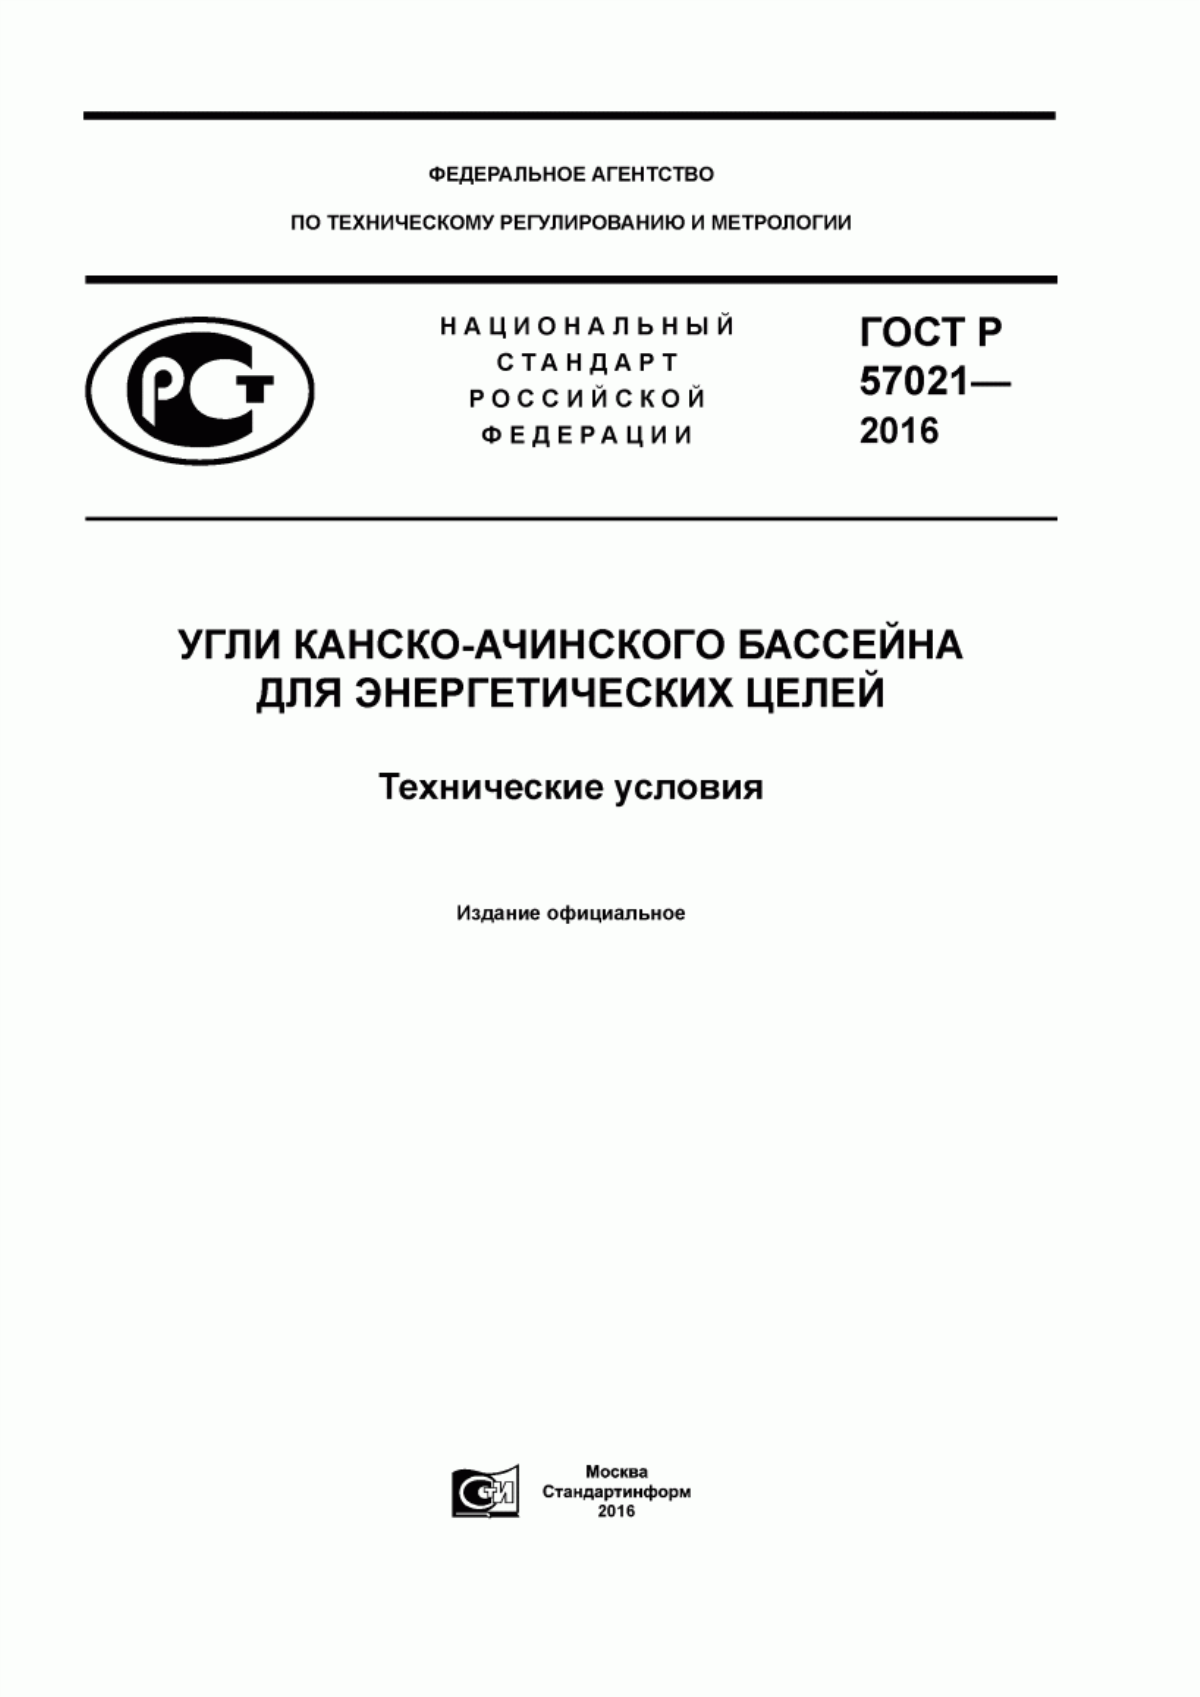 ГОСТ Р 57021-2016 Угли Канско-Ачинского бассейна для энергетических целей. Технические условия